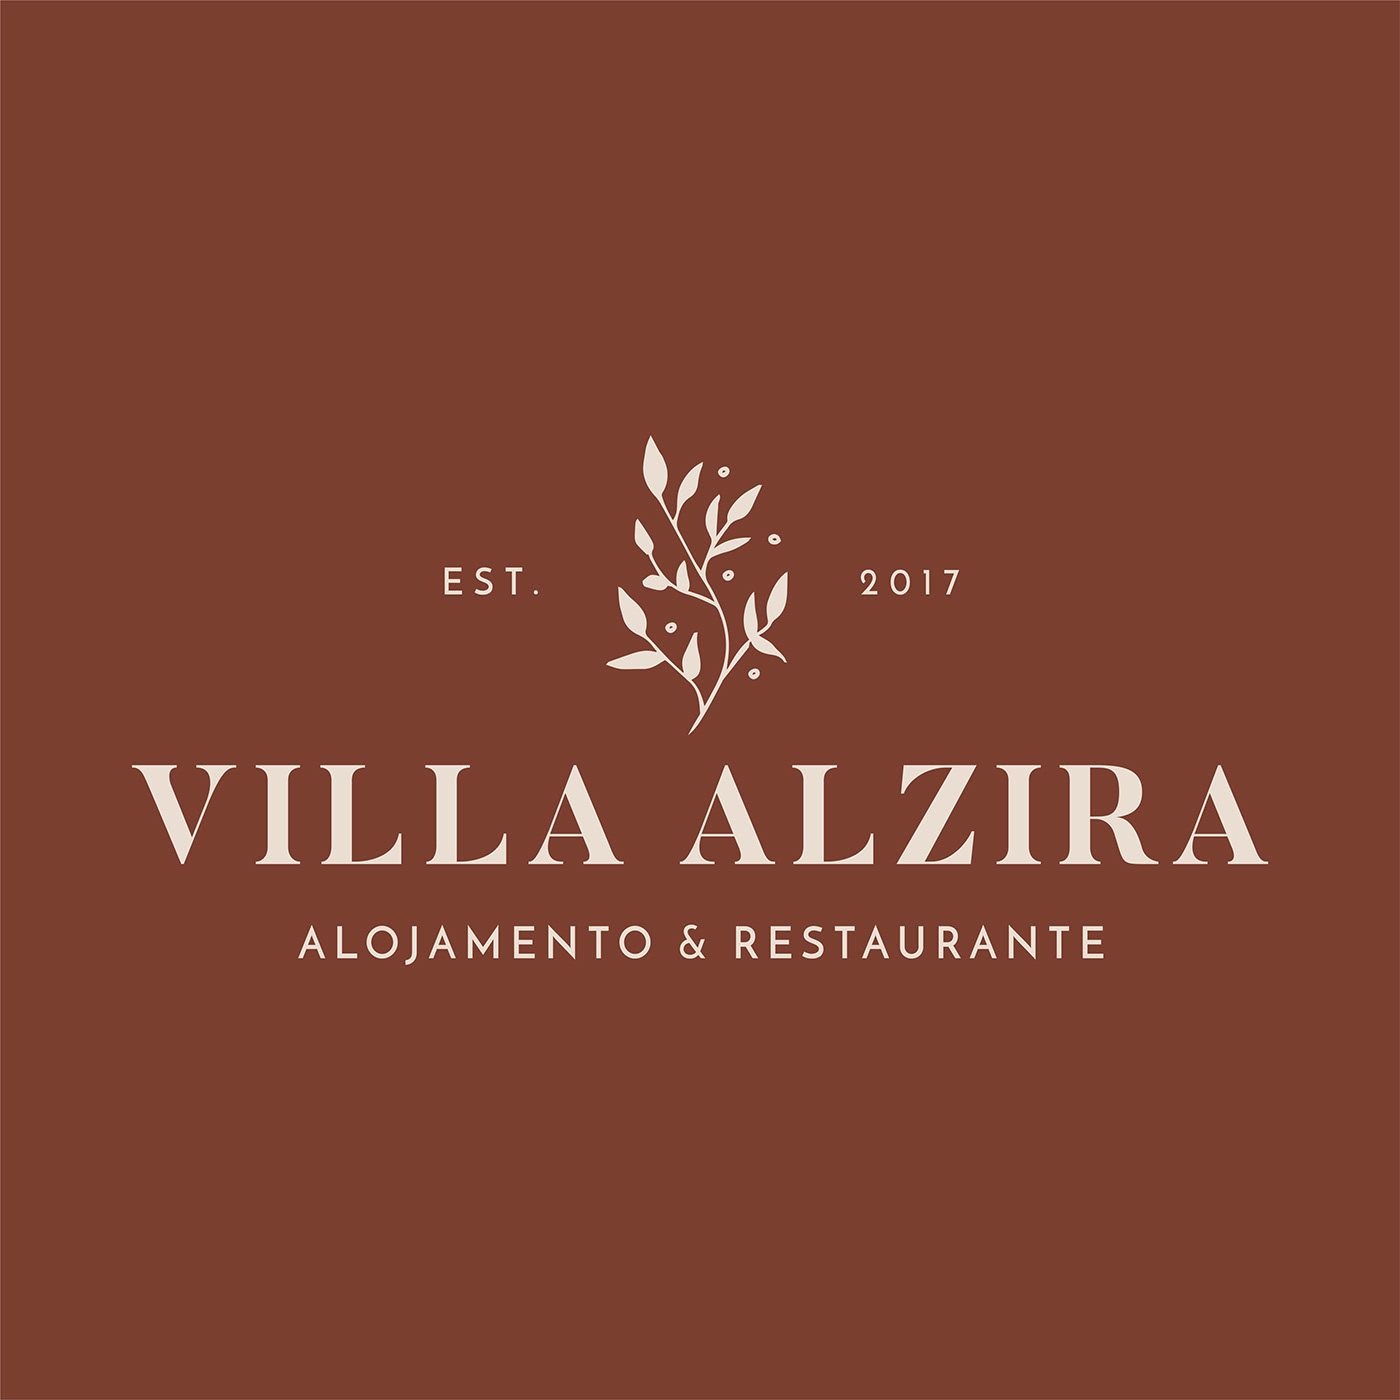 alojamento branding  hotel Logotipo restaurante Serra da Estrela